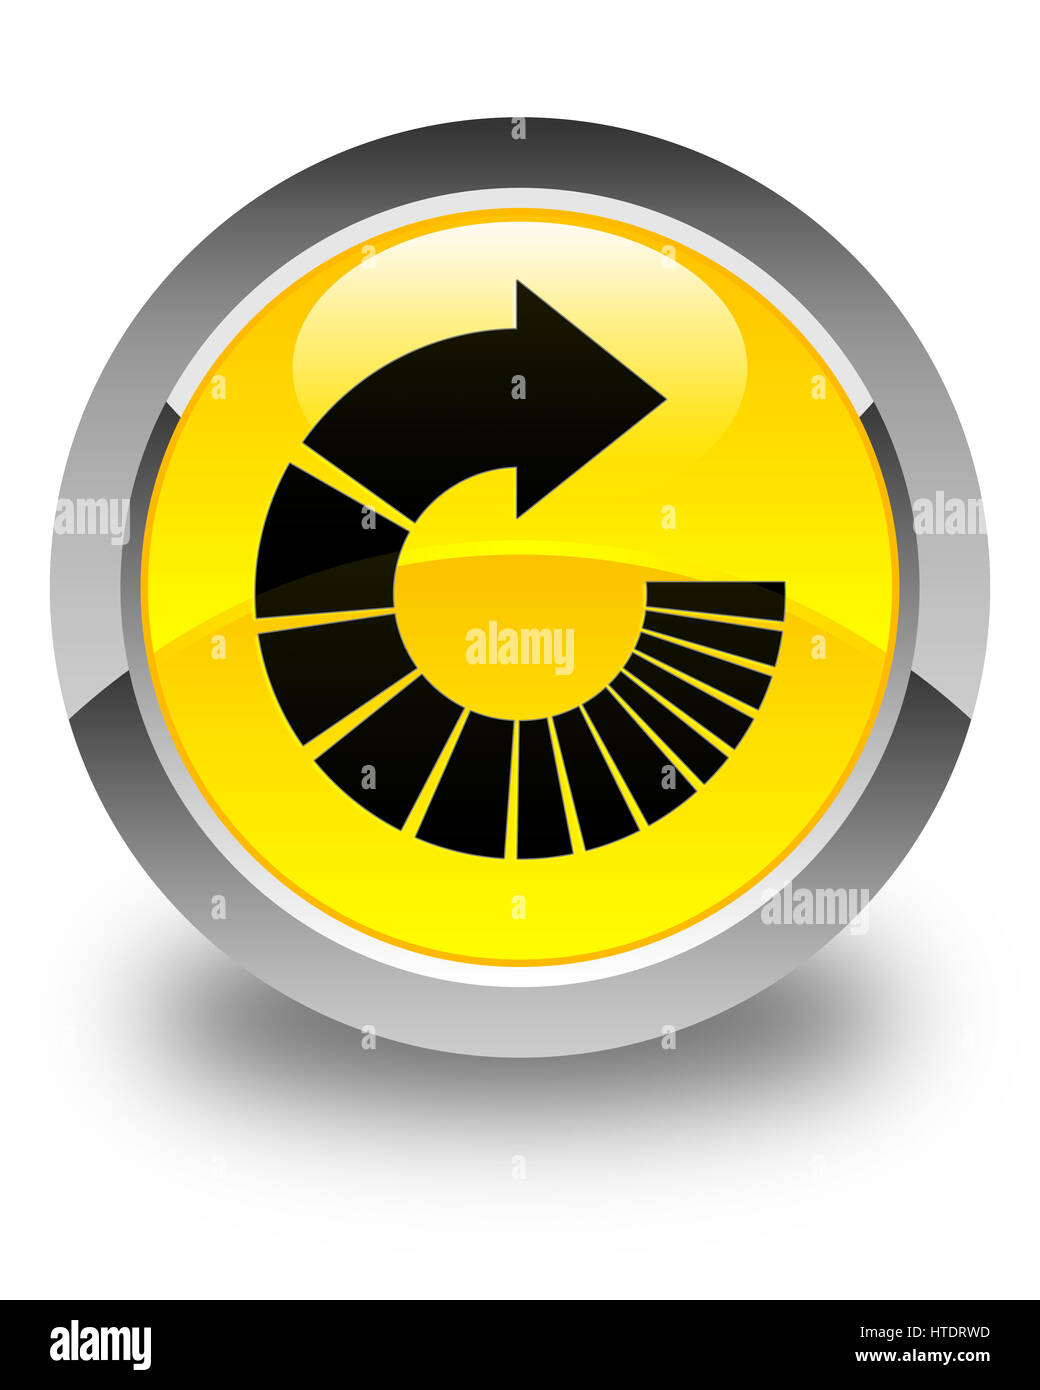 Faire pivoter touches isolées sur l'icône bouton rond jaune brillant abstract illustration Banque D'Images